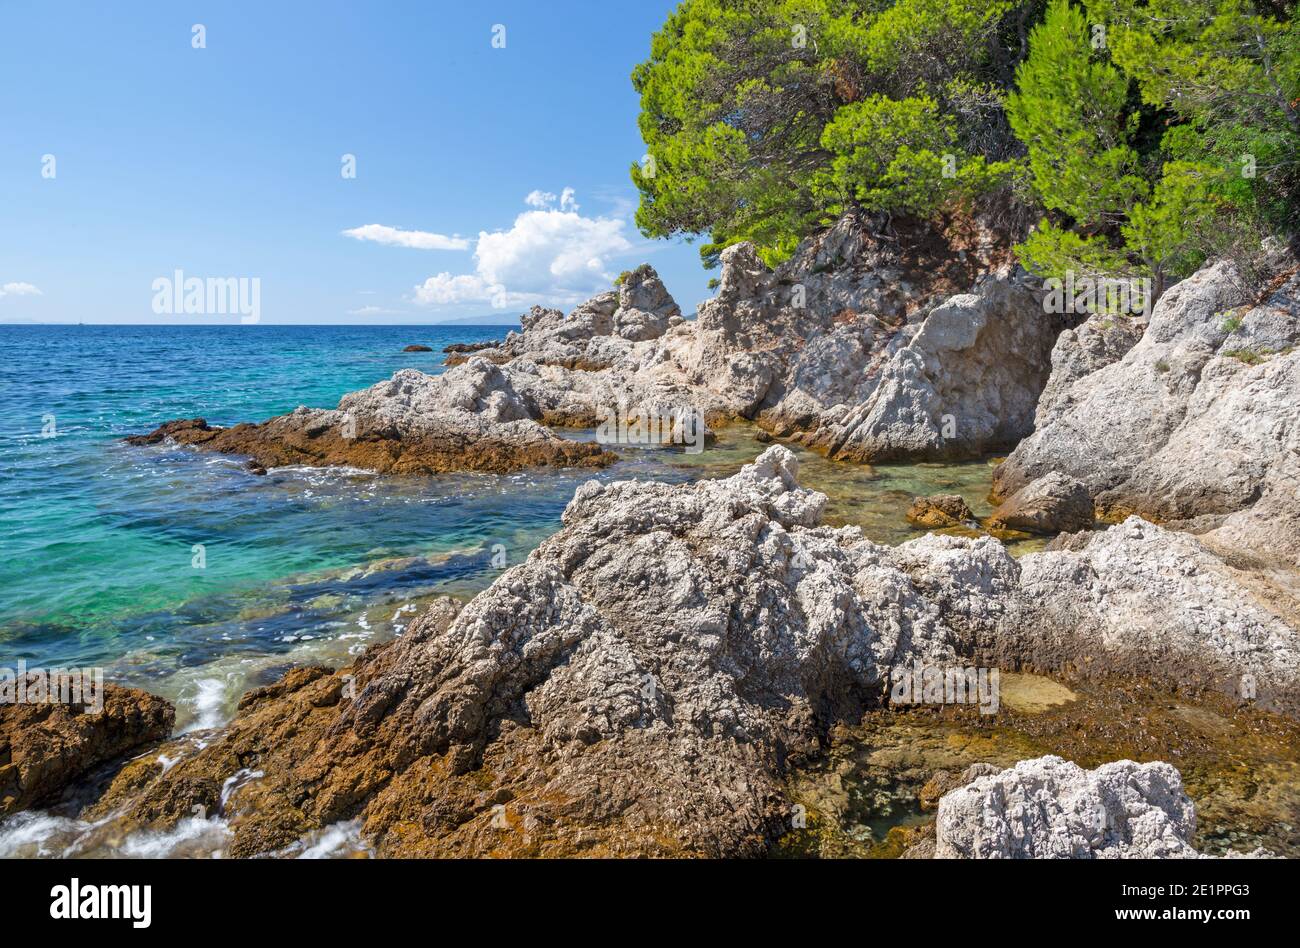 Croatie - La côte de la péninsule de Peliesac près de Zuliana village Banque D'Images